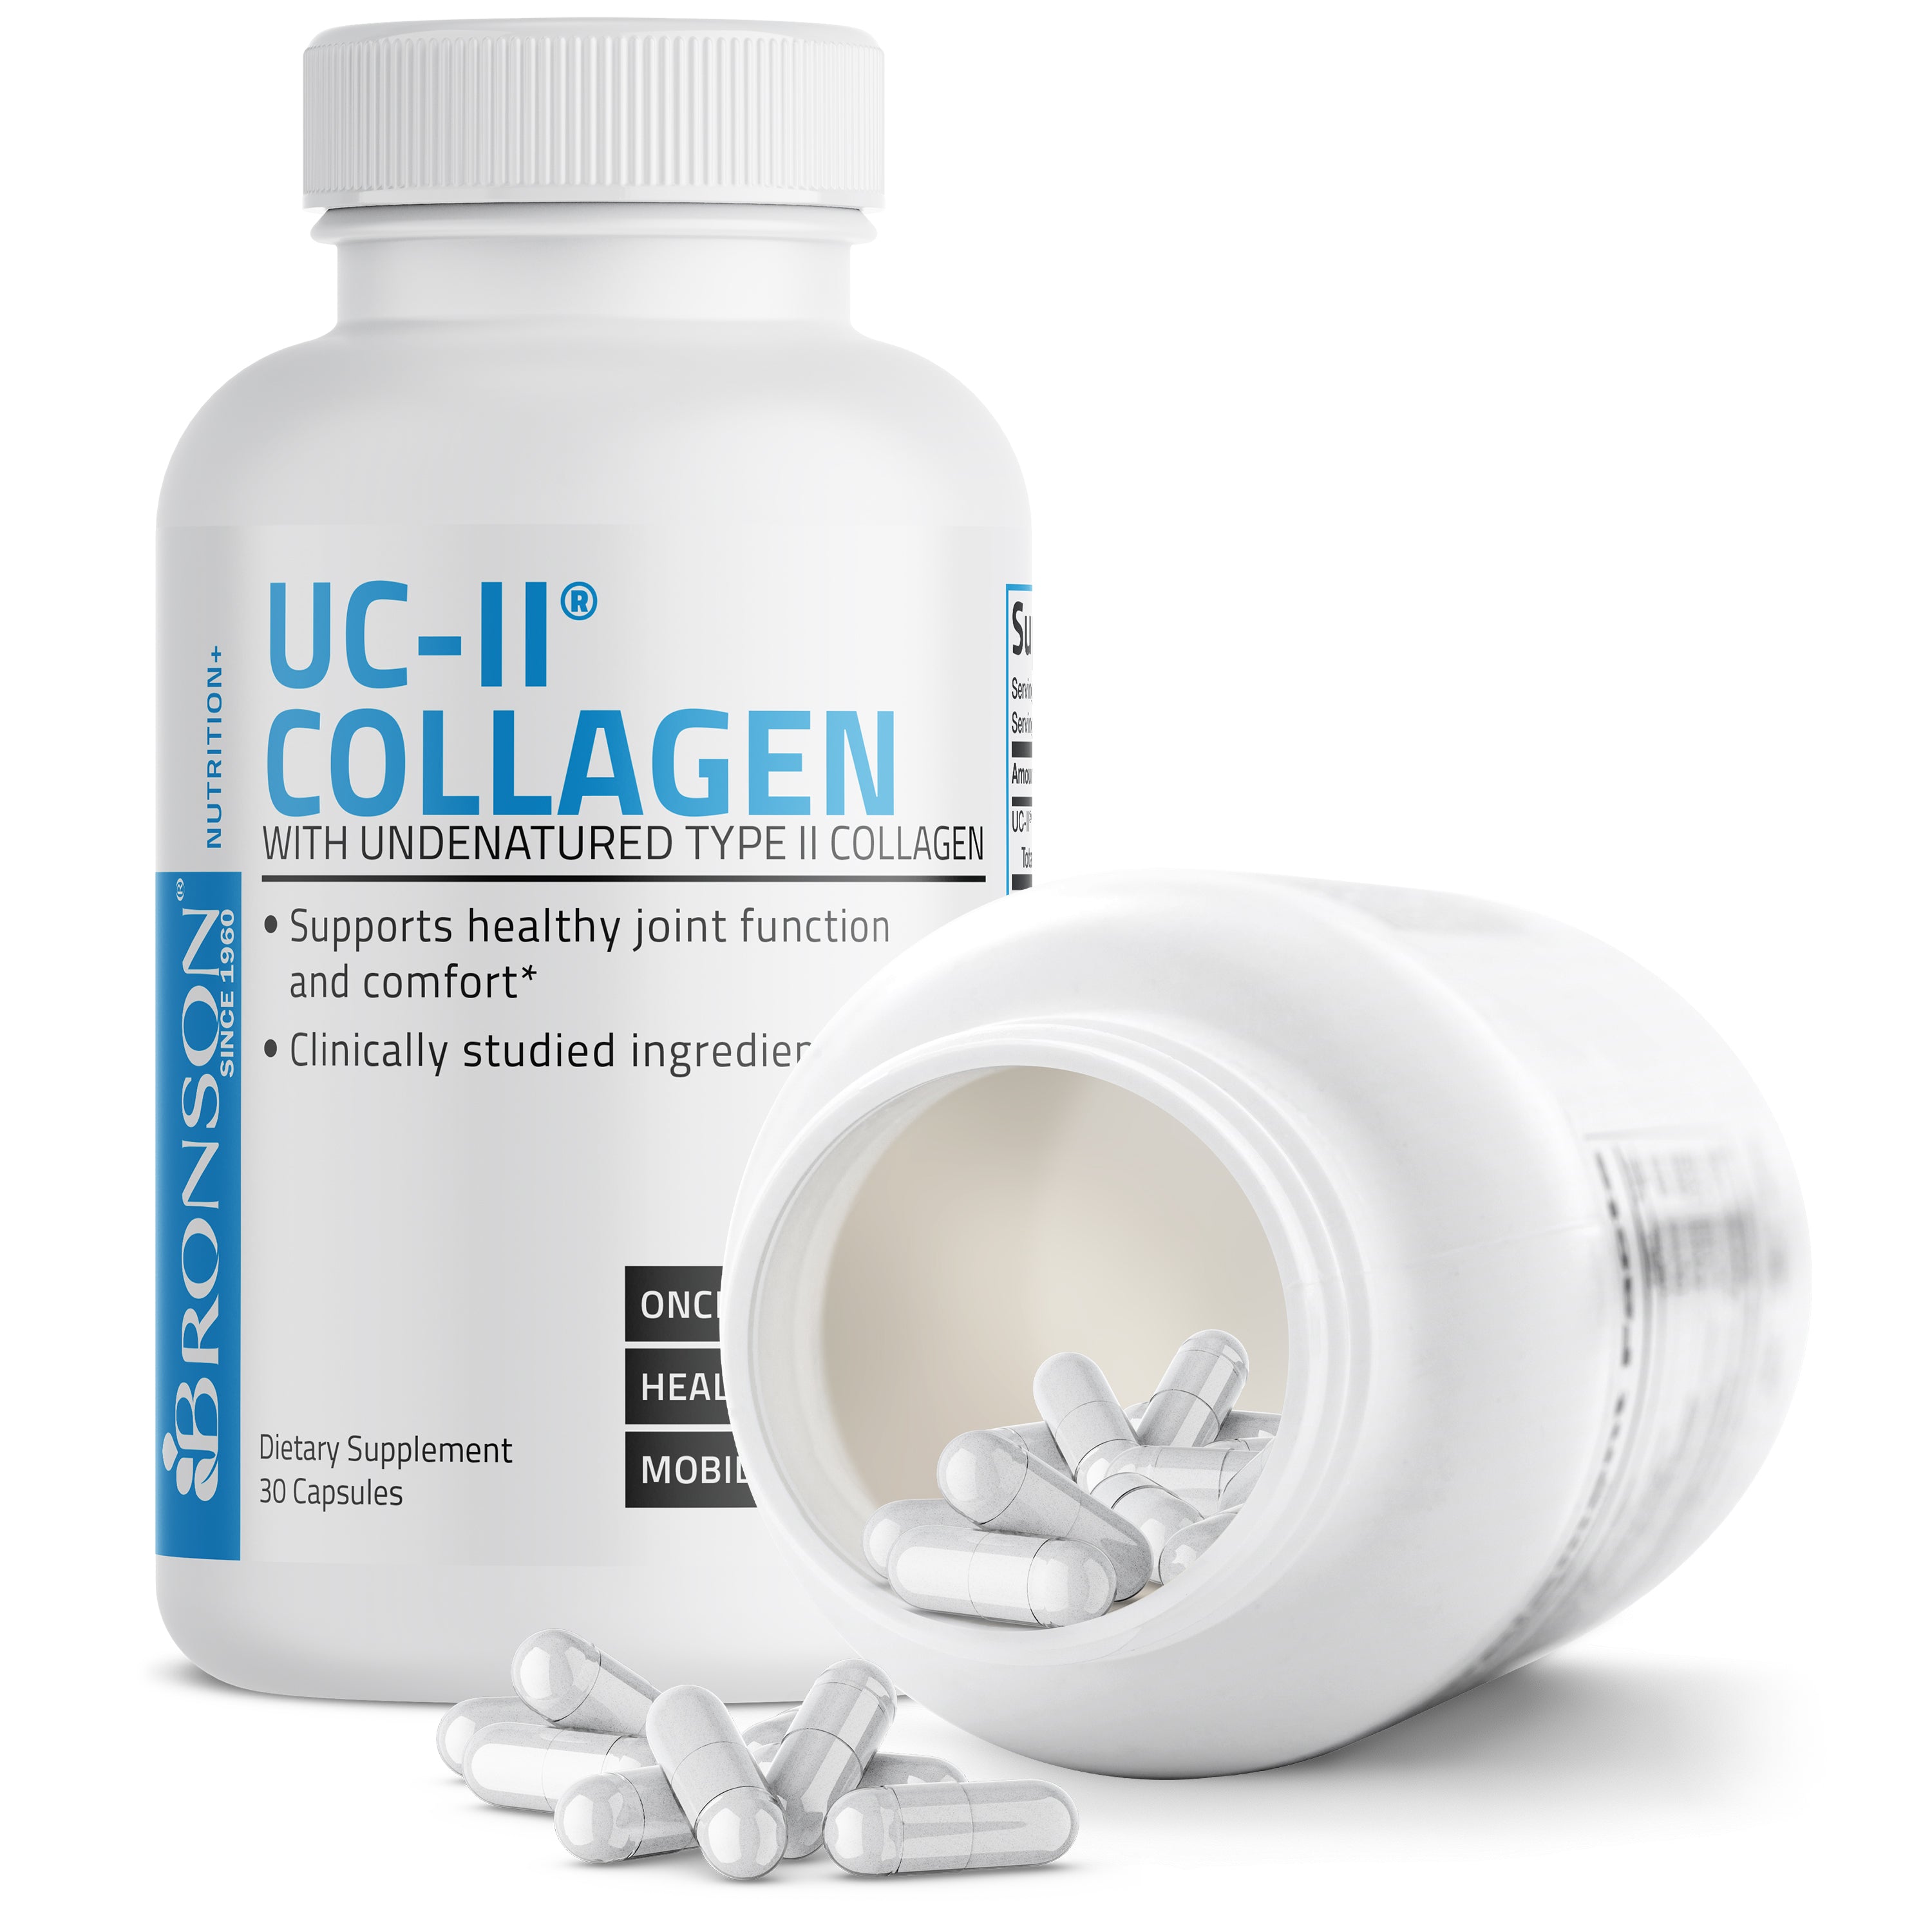 UC-II® Collagen with Undenatured Type II Collagen - 30 Capsules view 4 of 6